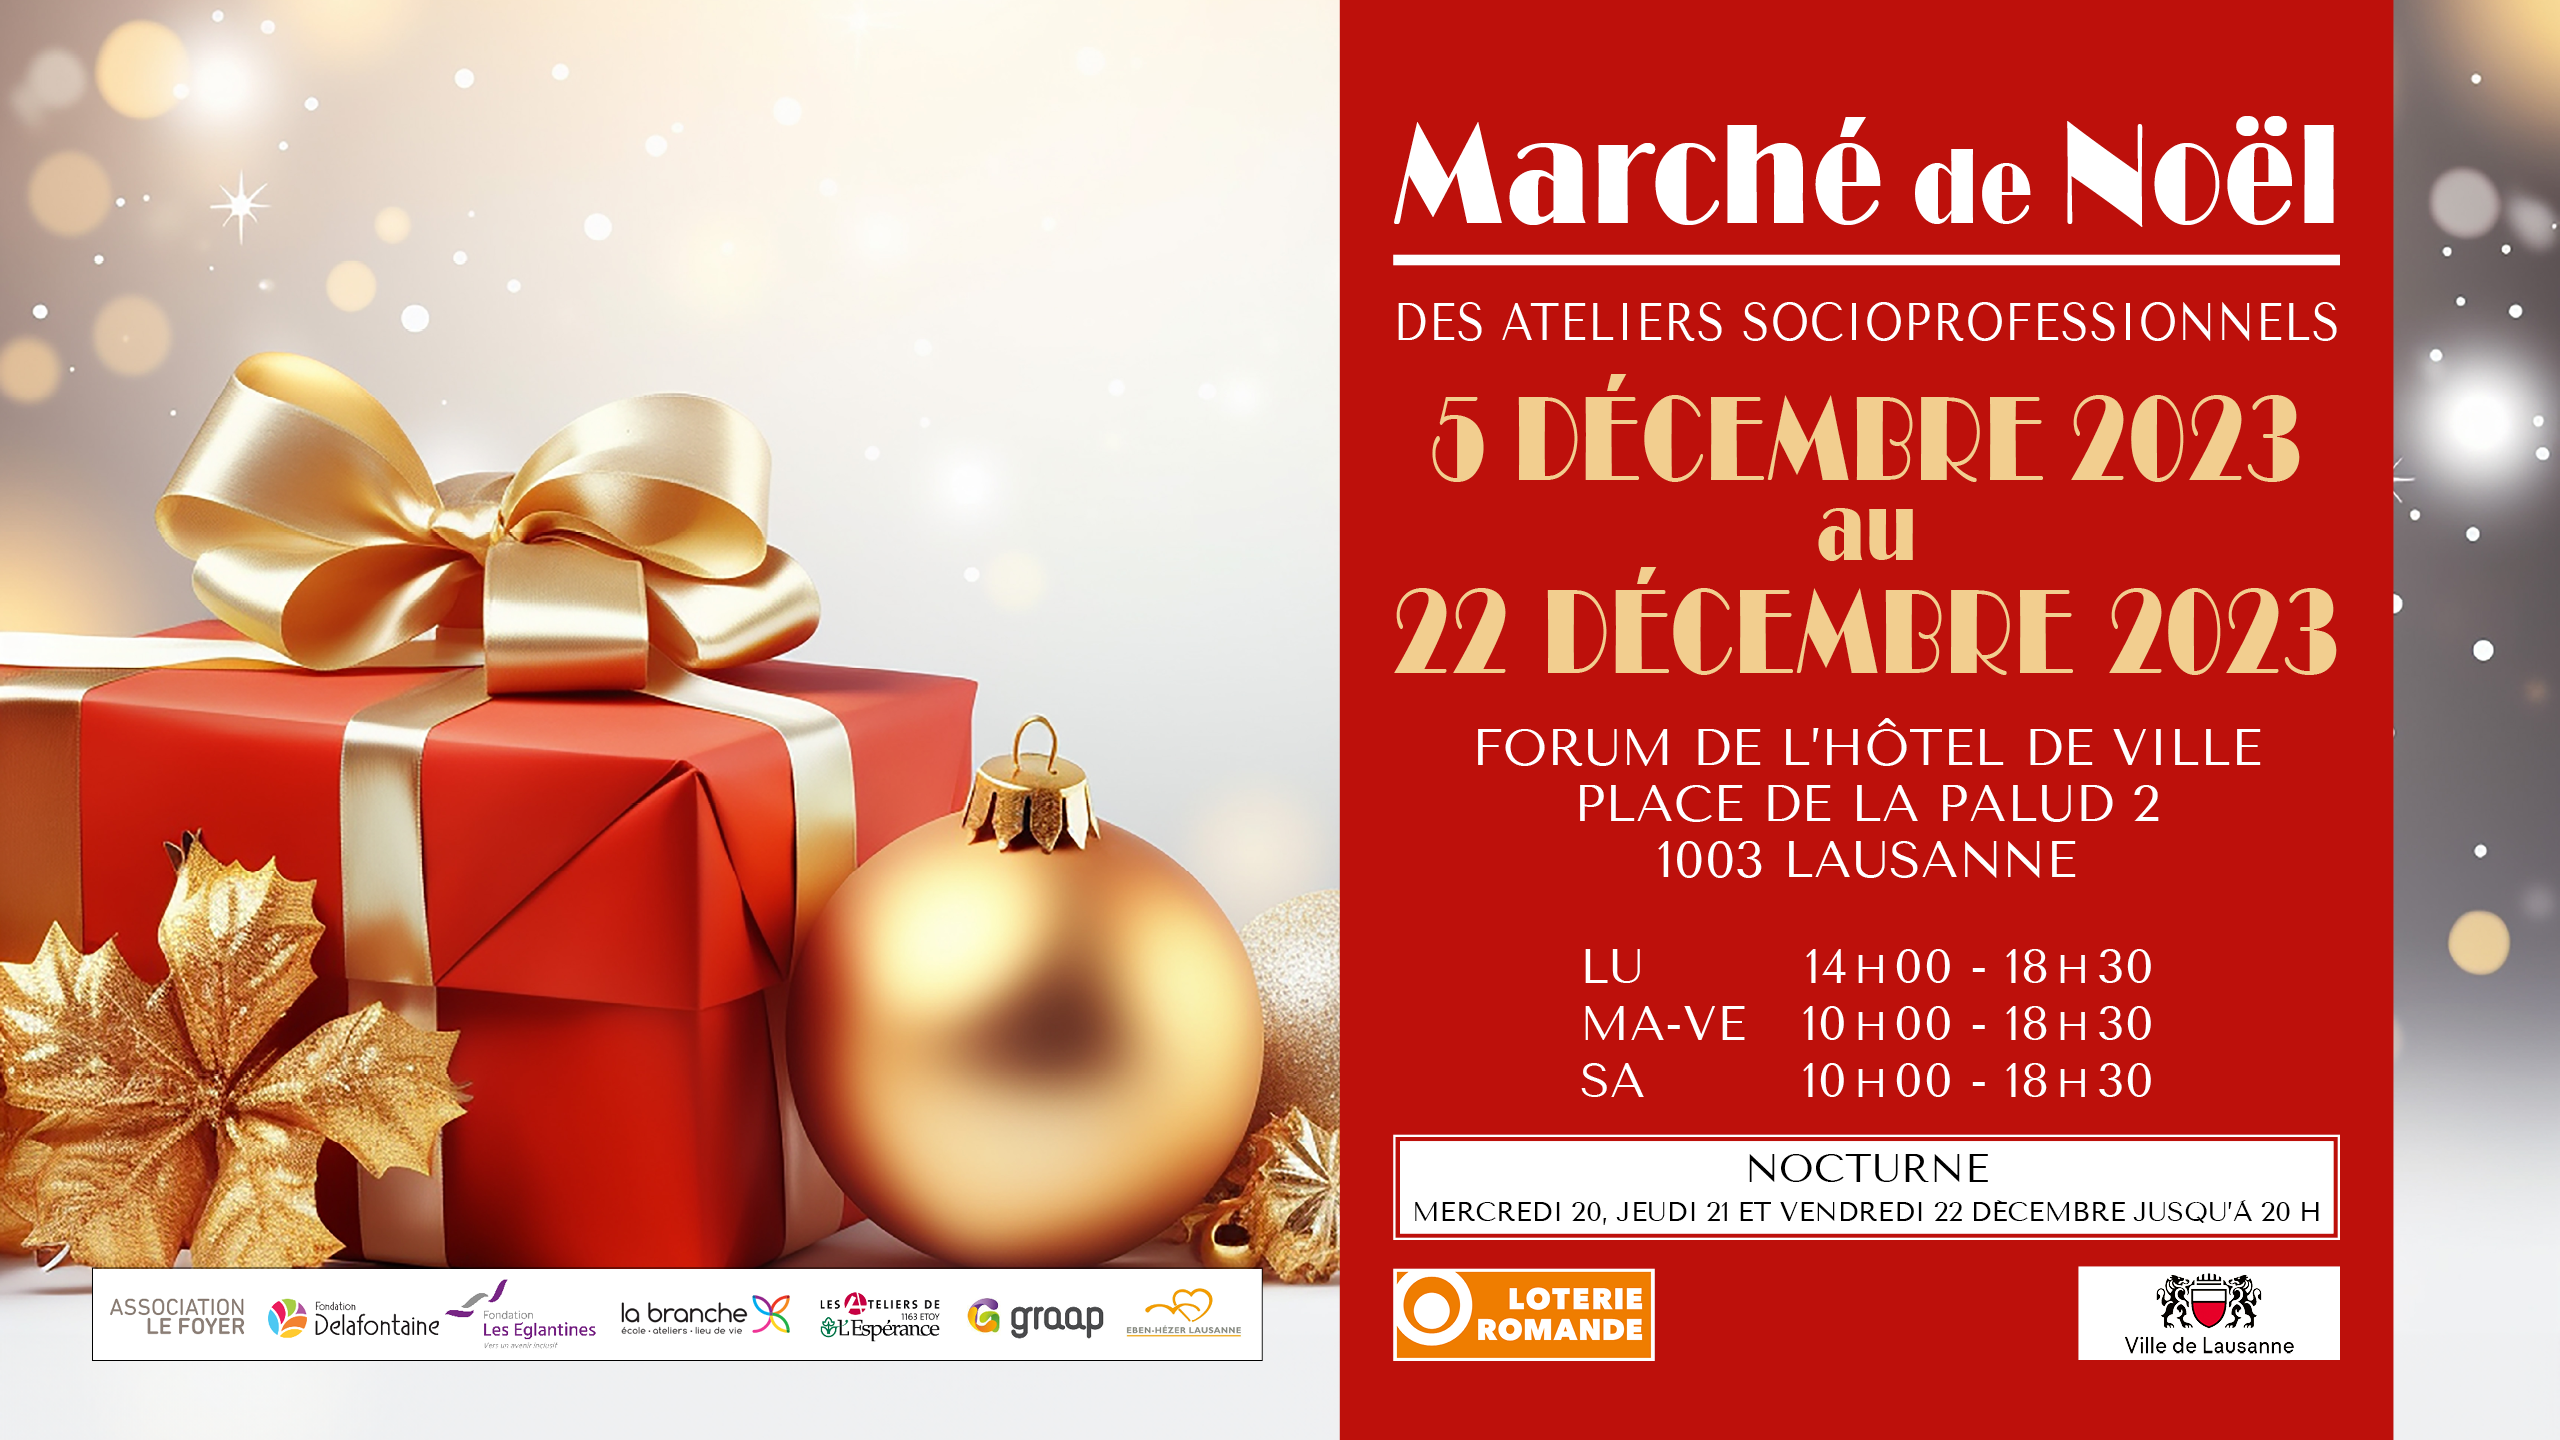 Fondatioon Les Eglantines - Marché de Noël des Ateliers socio-professionnels 2023